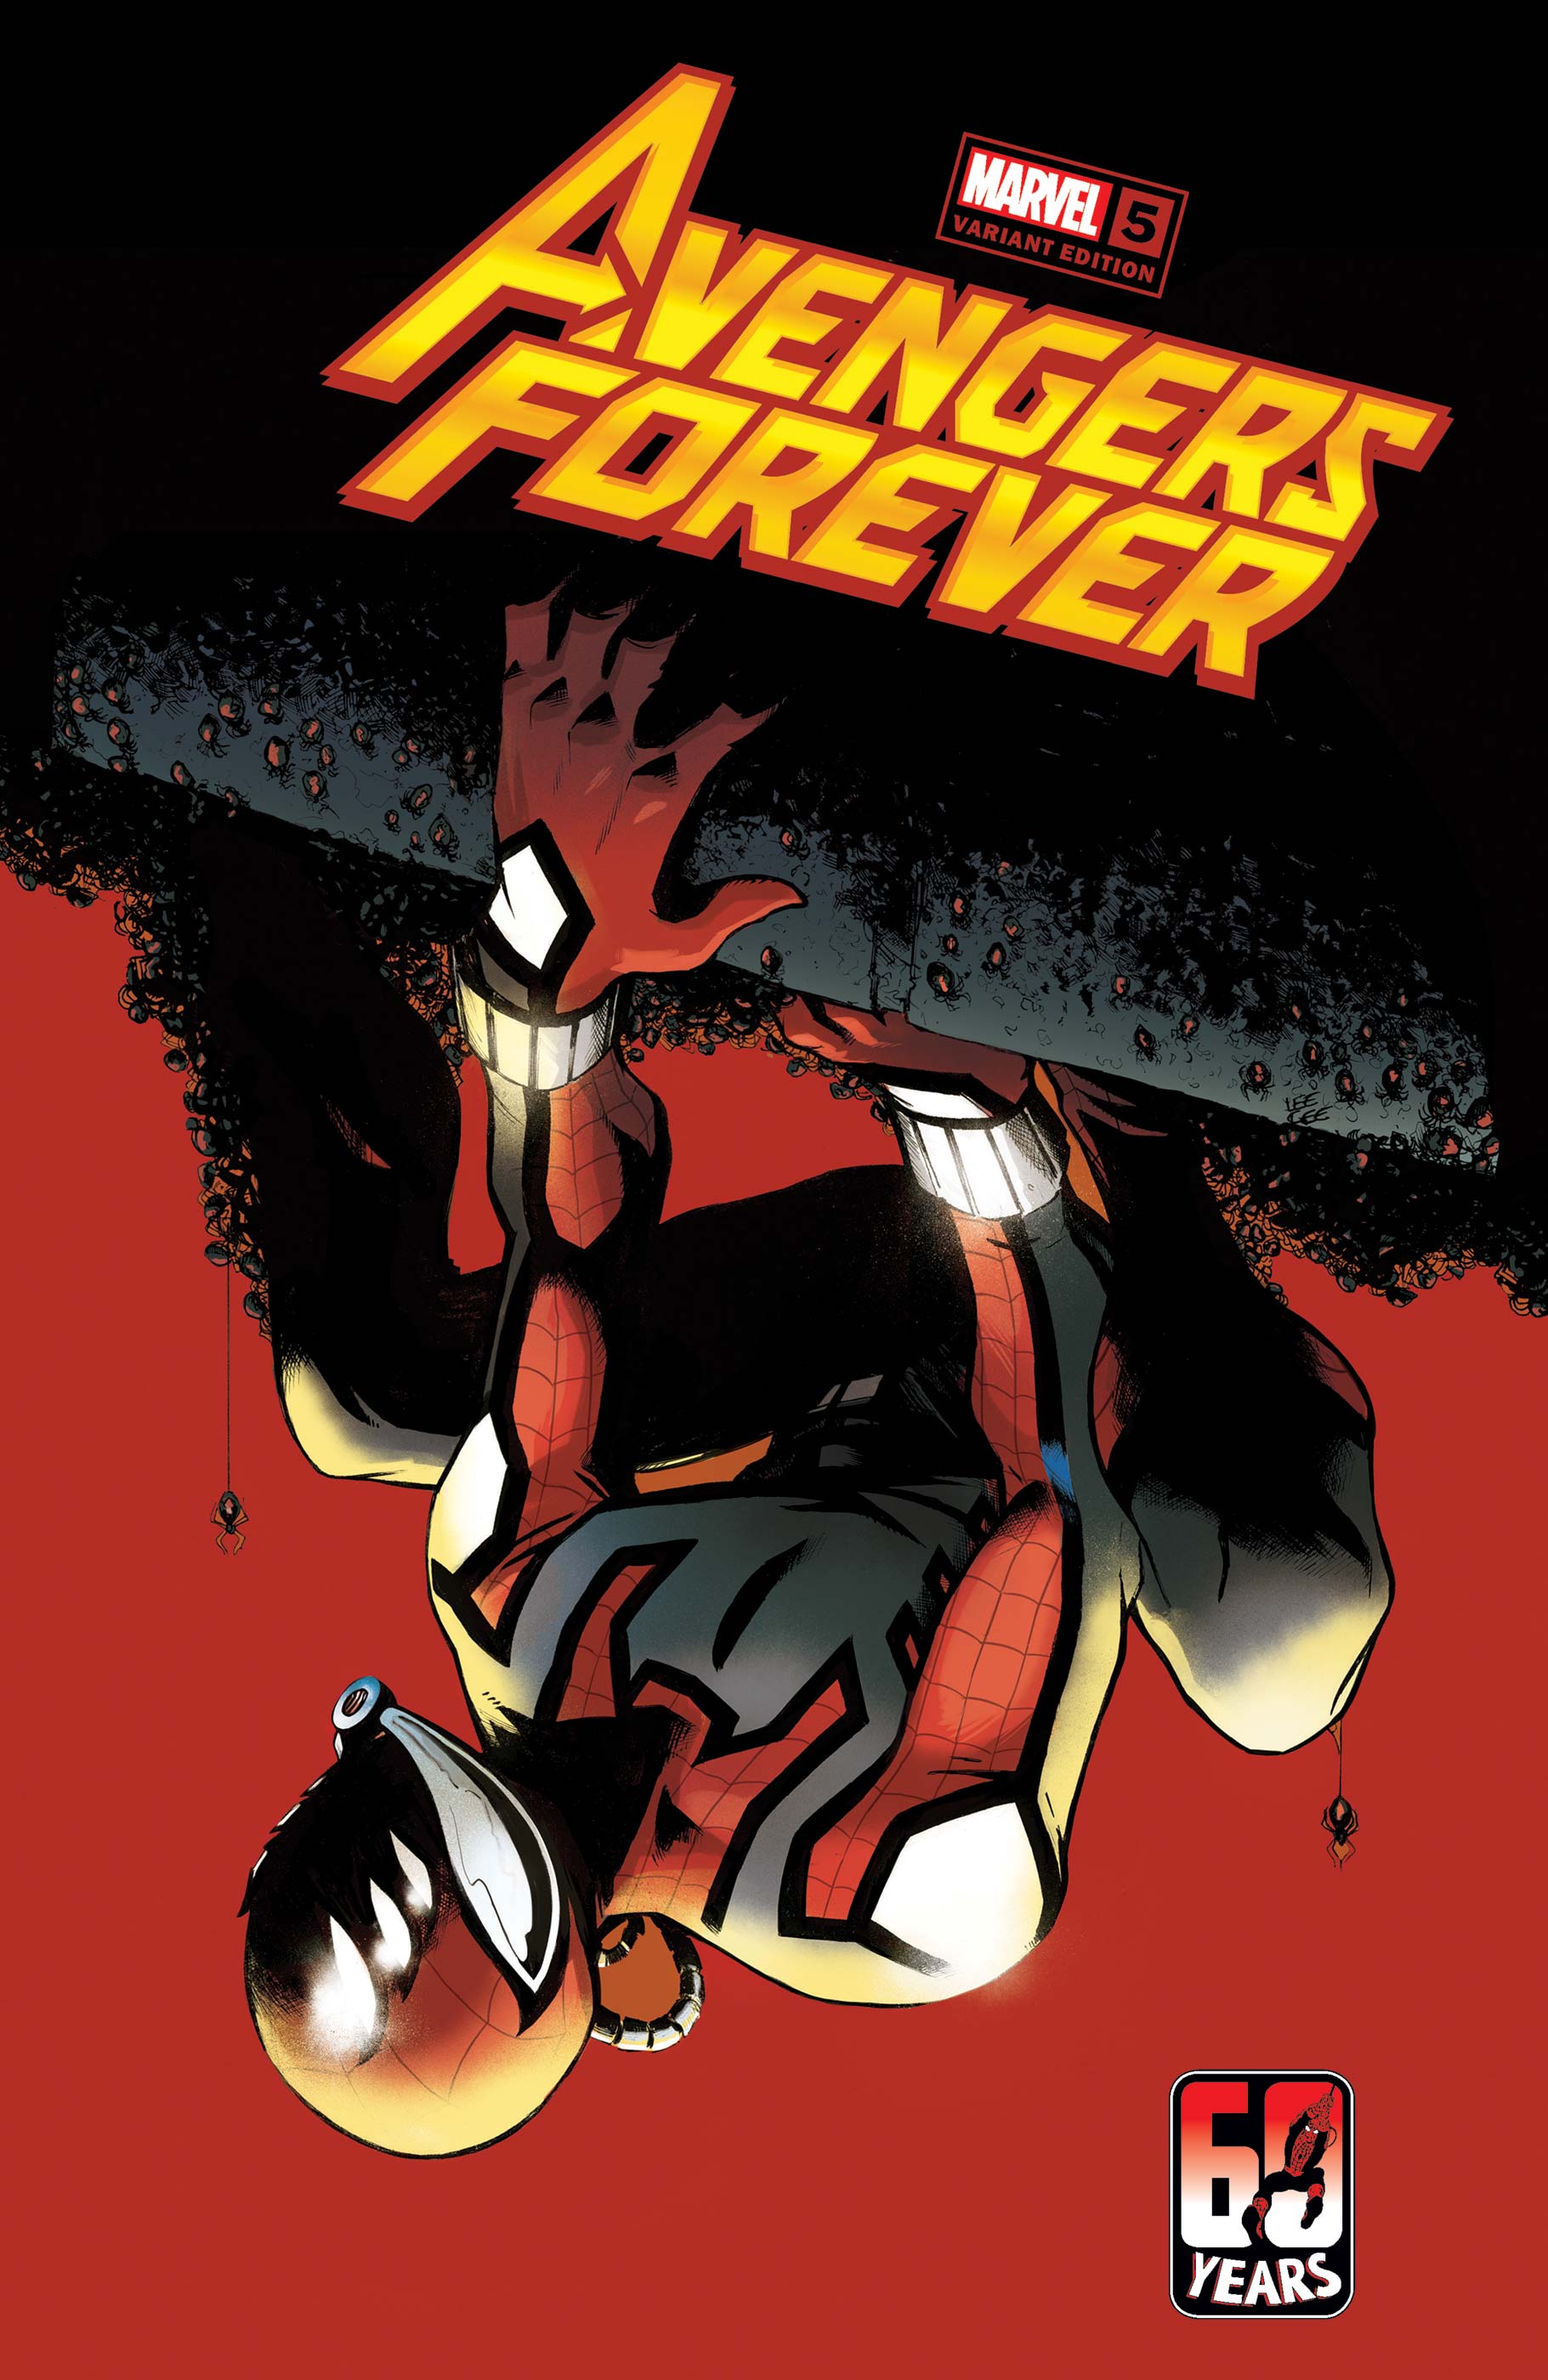 Avengers Forever (2021) #5 (Variant)